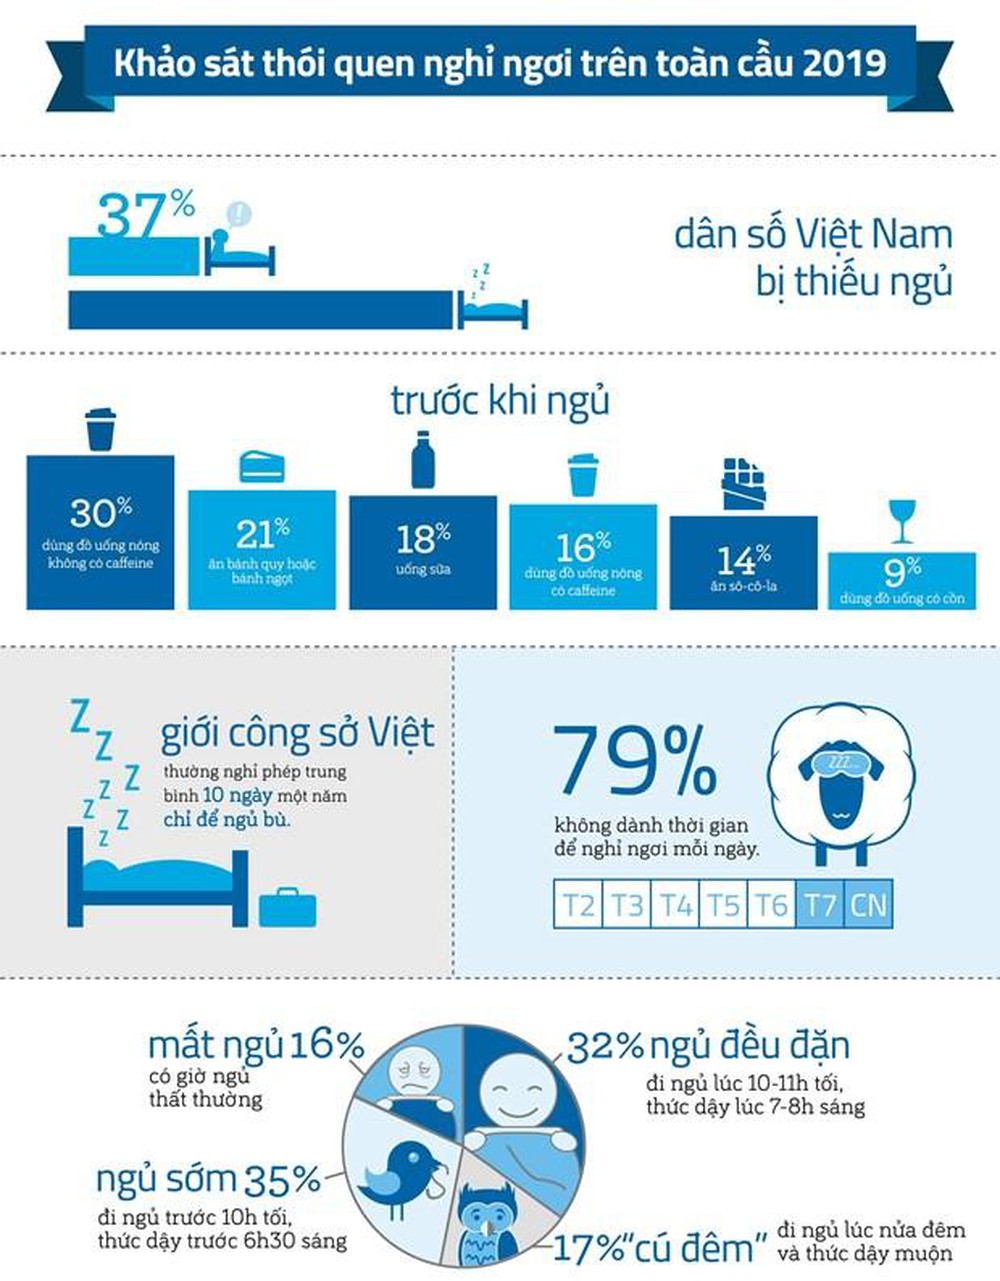 Khảo sát - thống kê về giấc ngủ